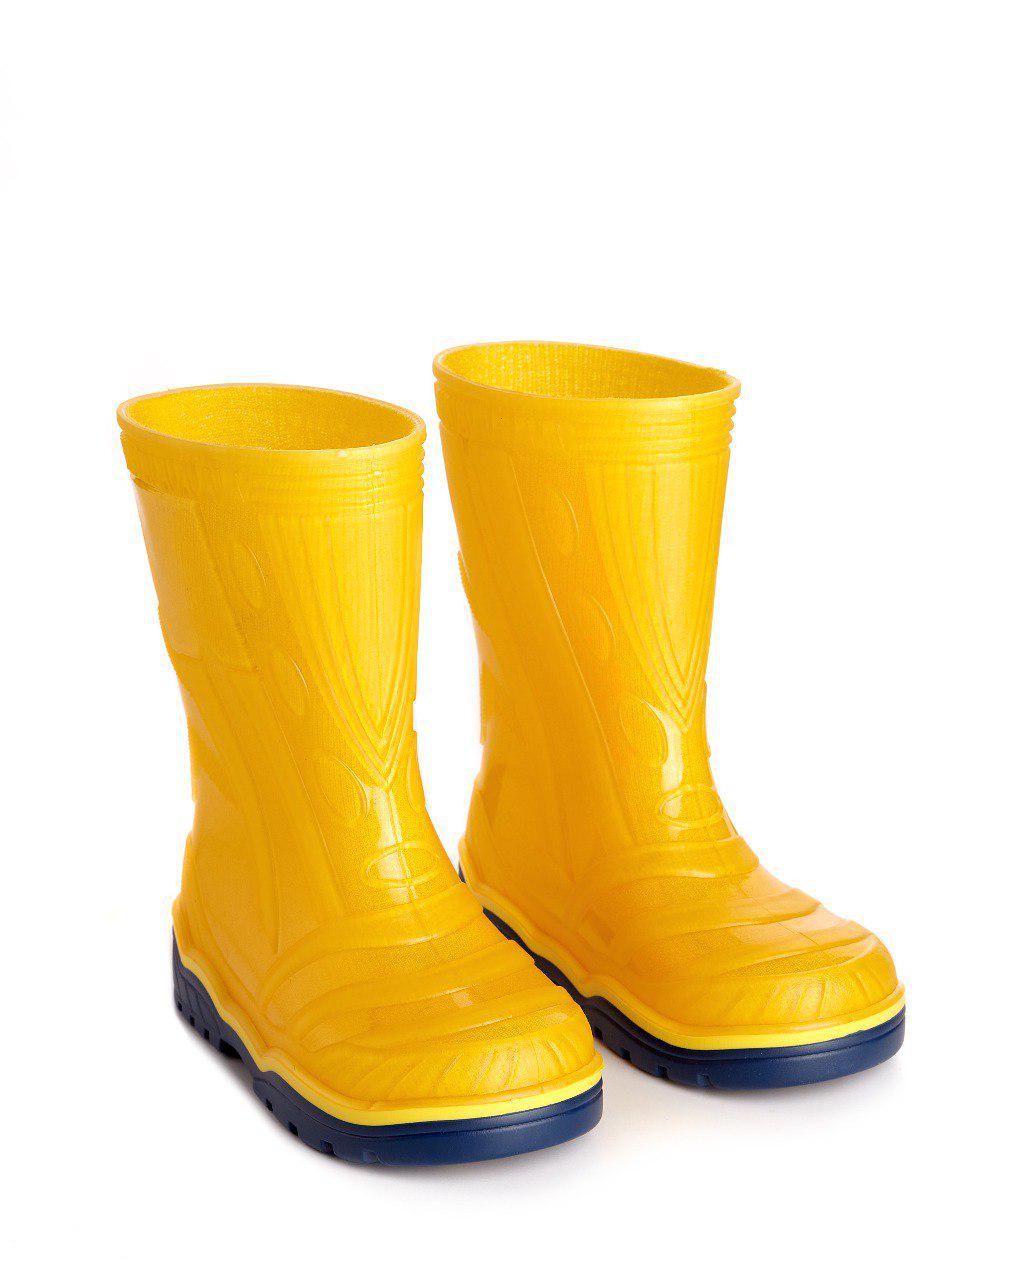 Дитячі гумові чоботи для дівчинки і для хлопчика Litma р. 24 NEON Жовтий